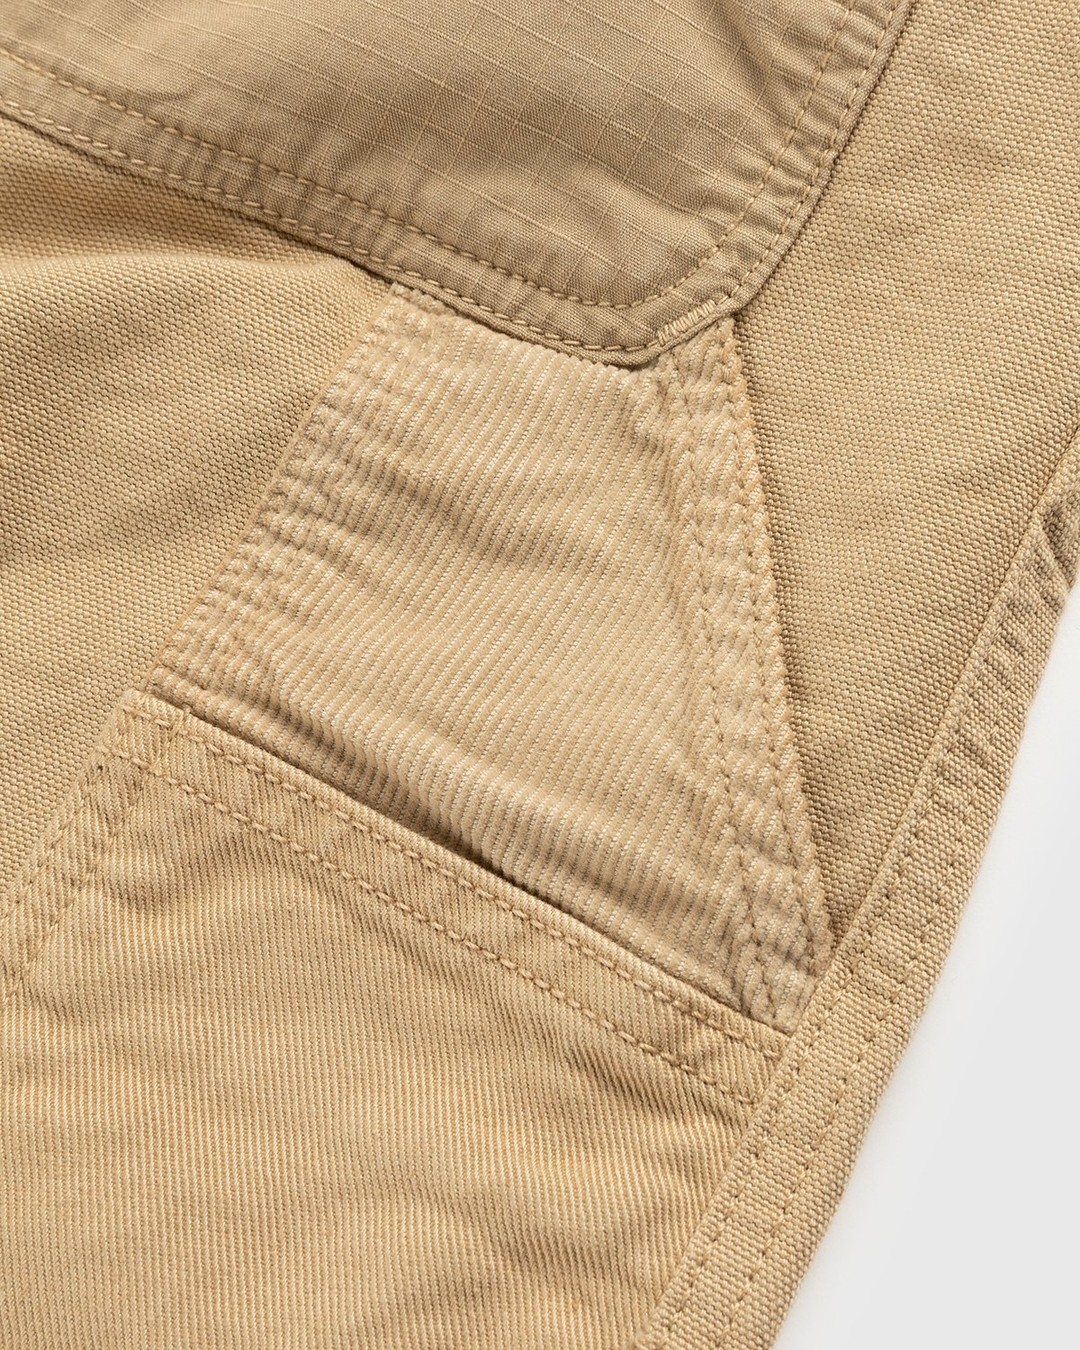 Carhartt WIP medley utility trousers in dusty beige